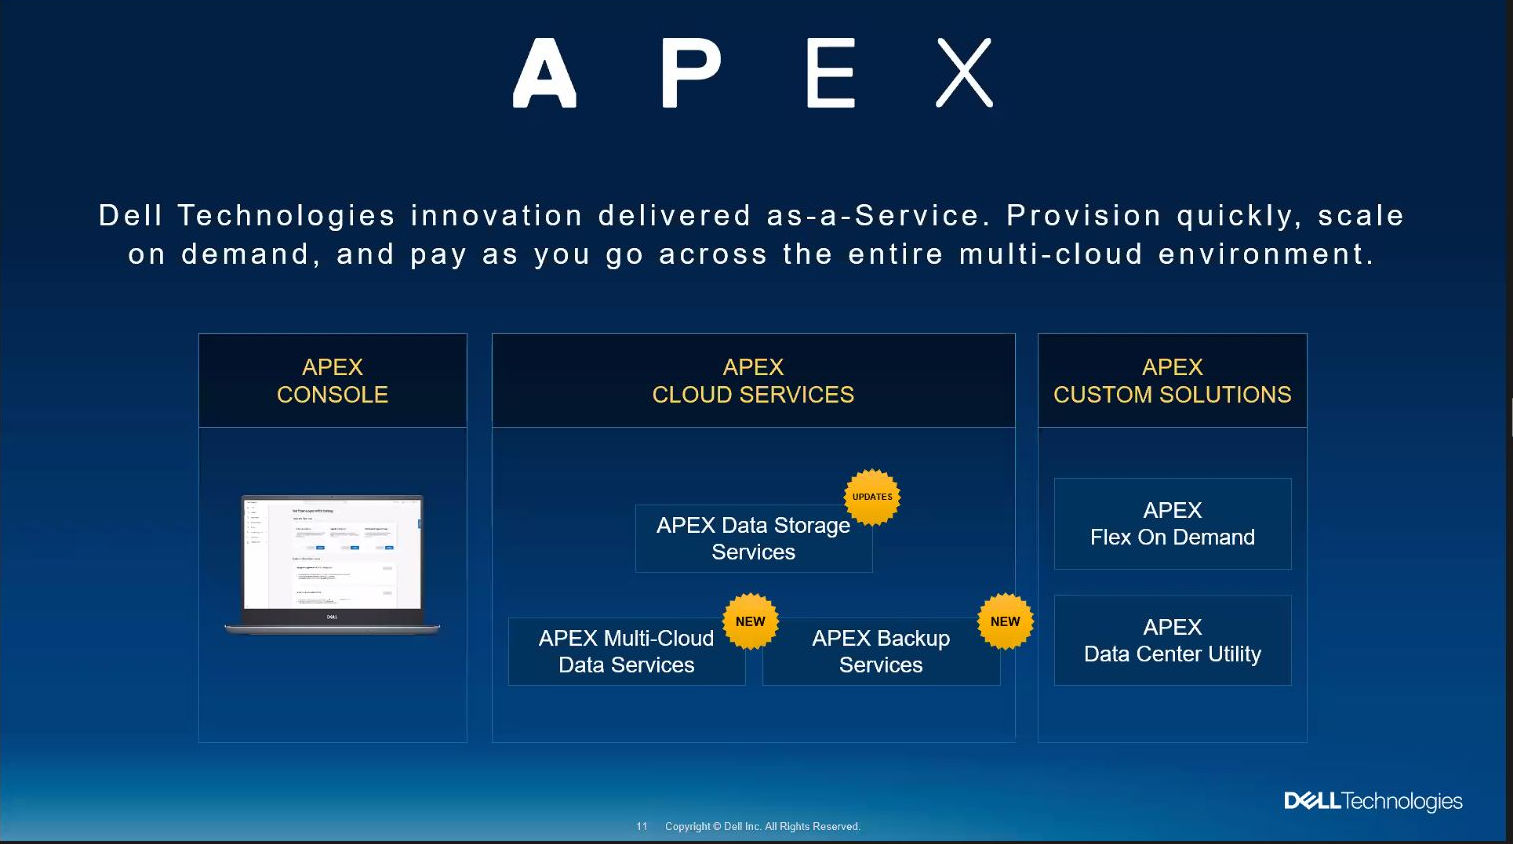 APEX, Dell Technologies